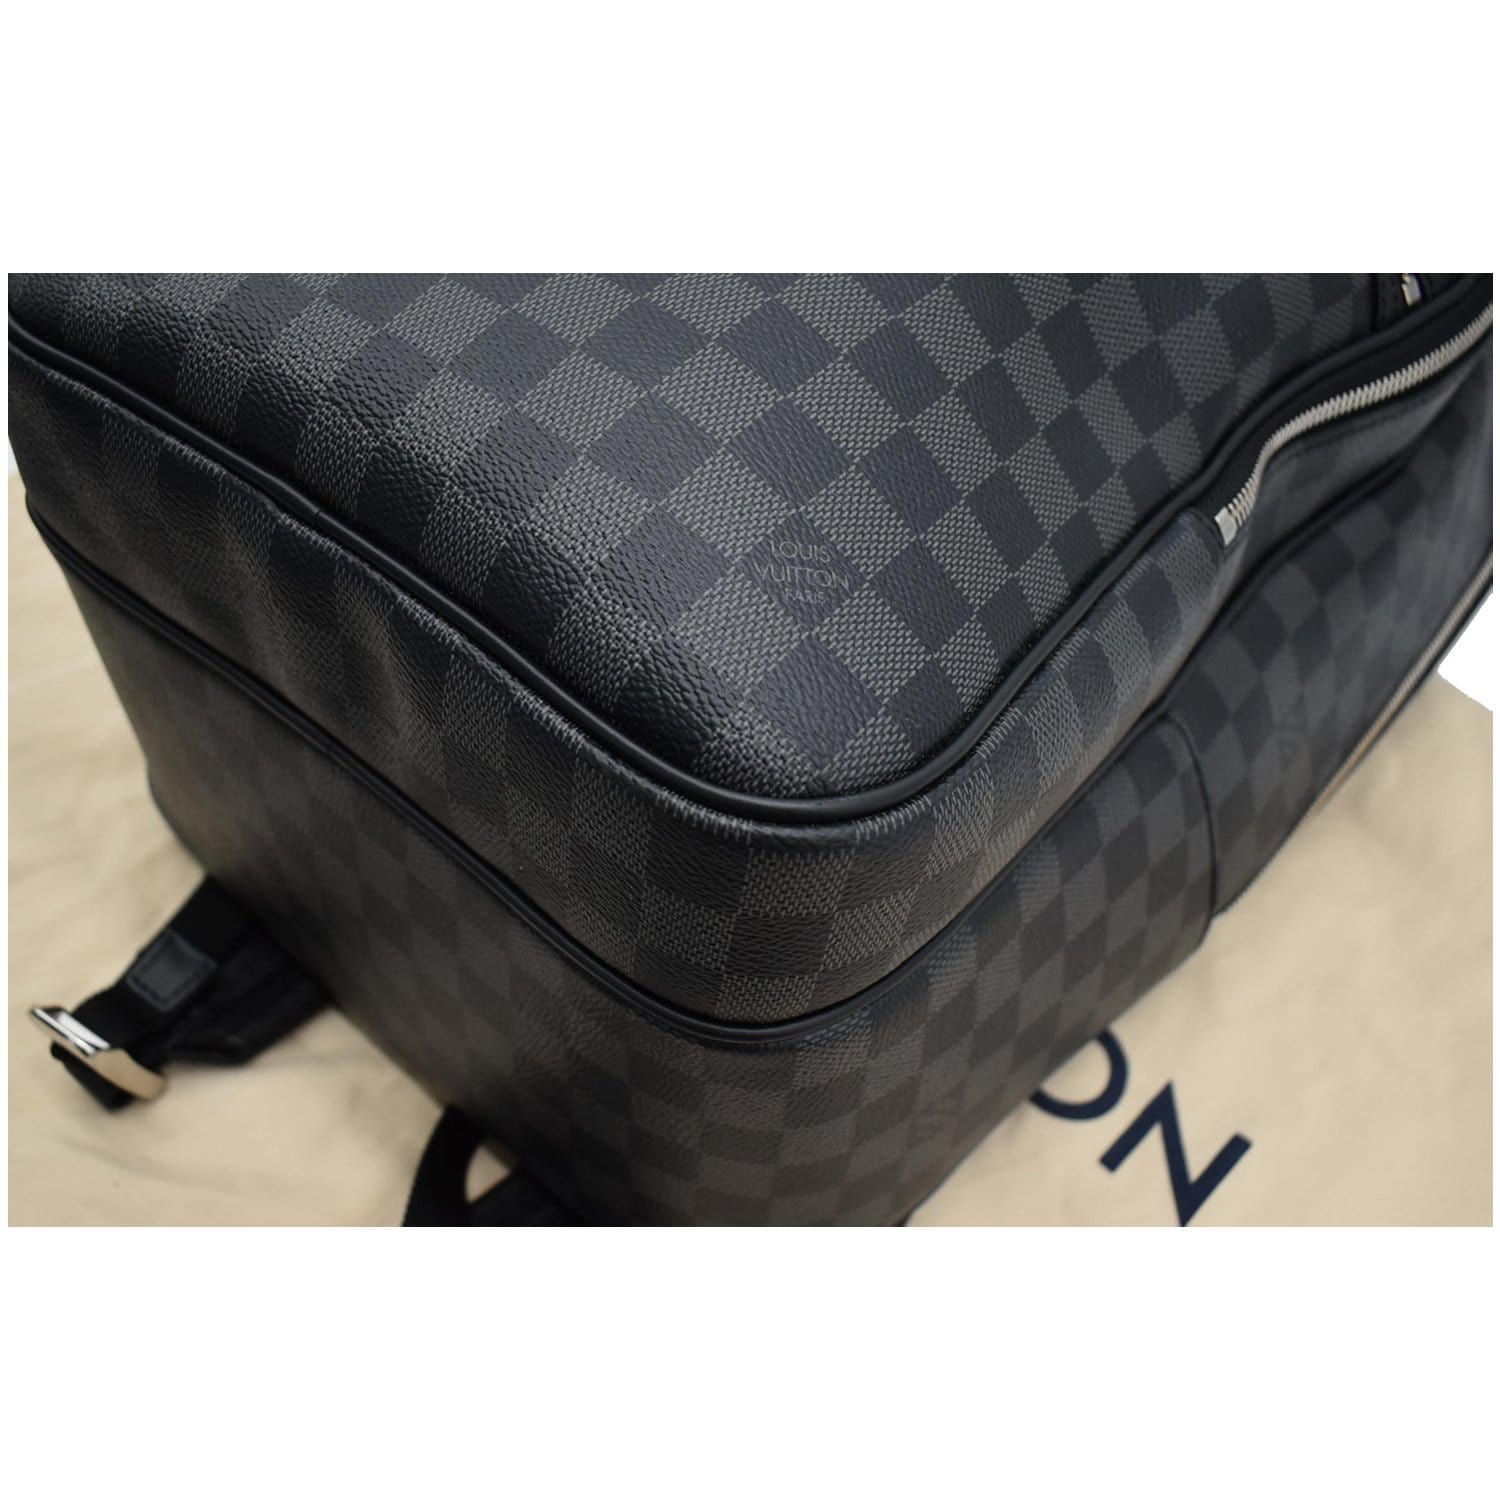 Louis Vuitton Black Damier Infini Leather Michael Backpack Louis Vuitton